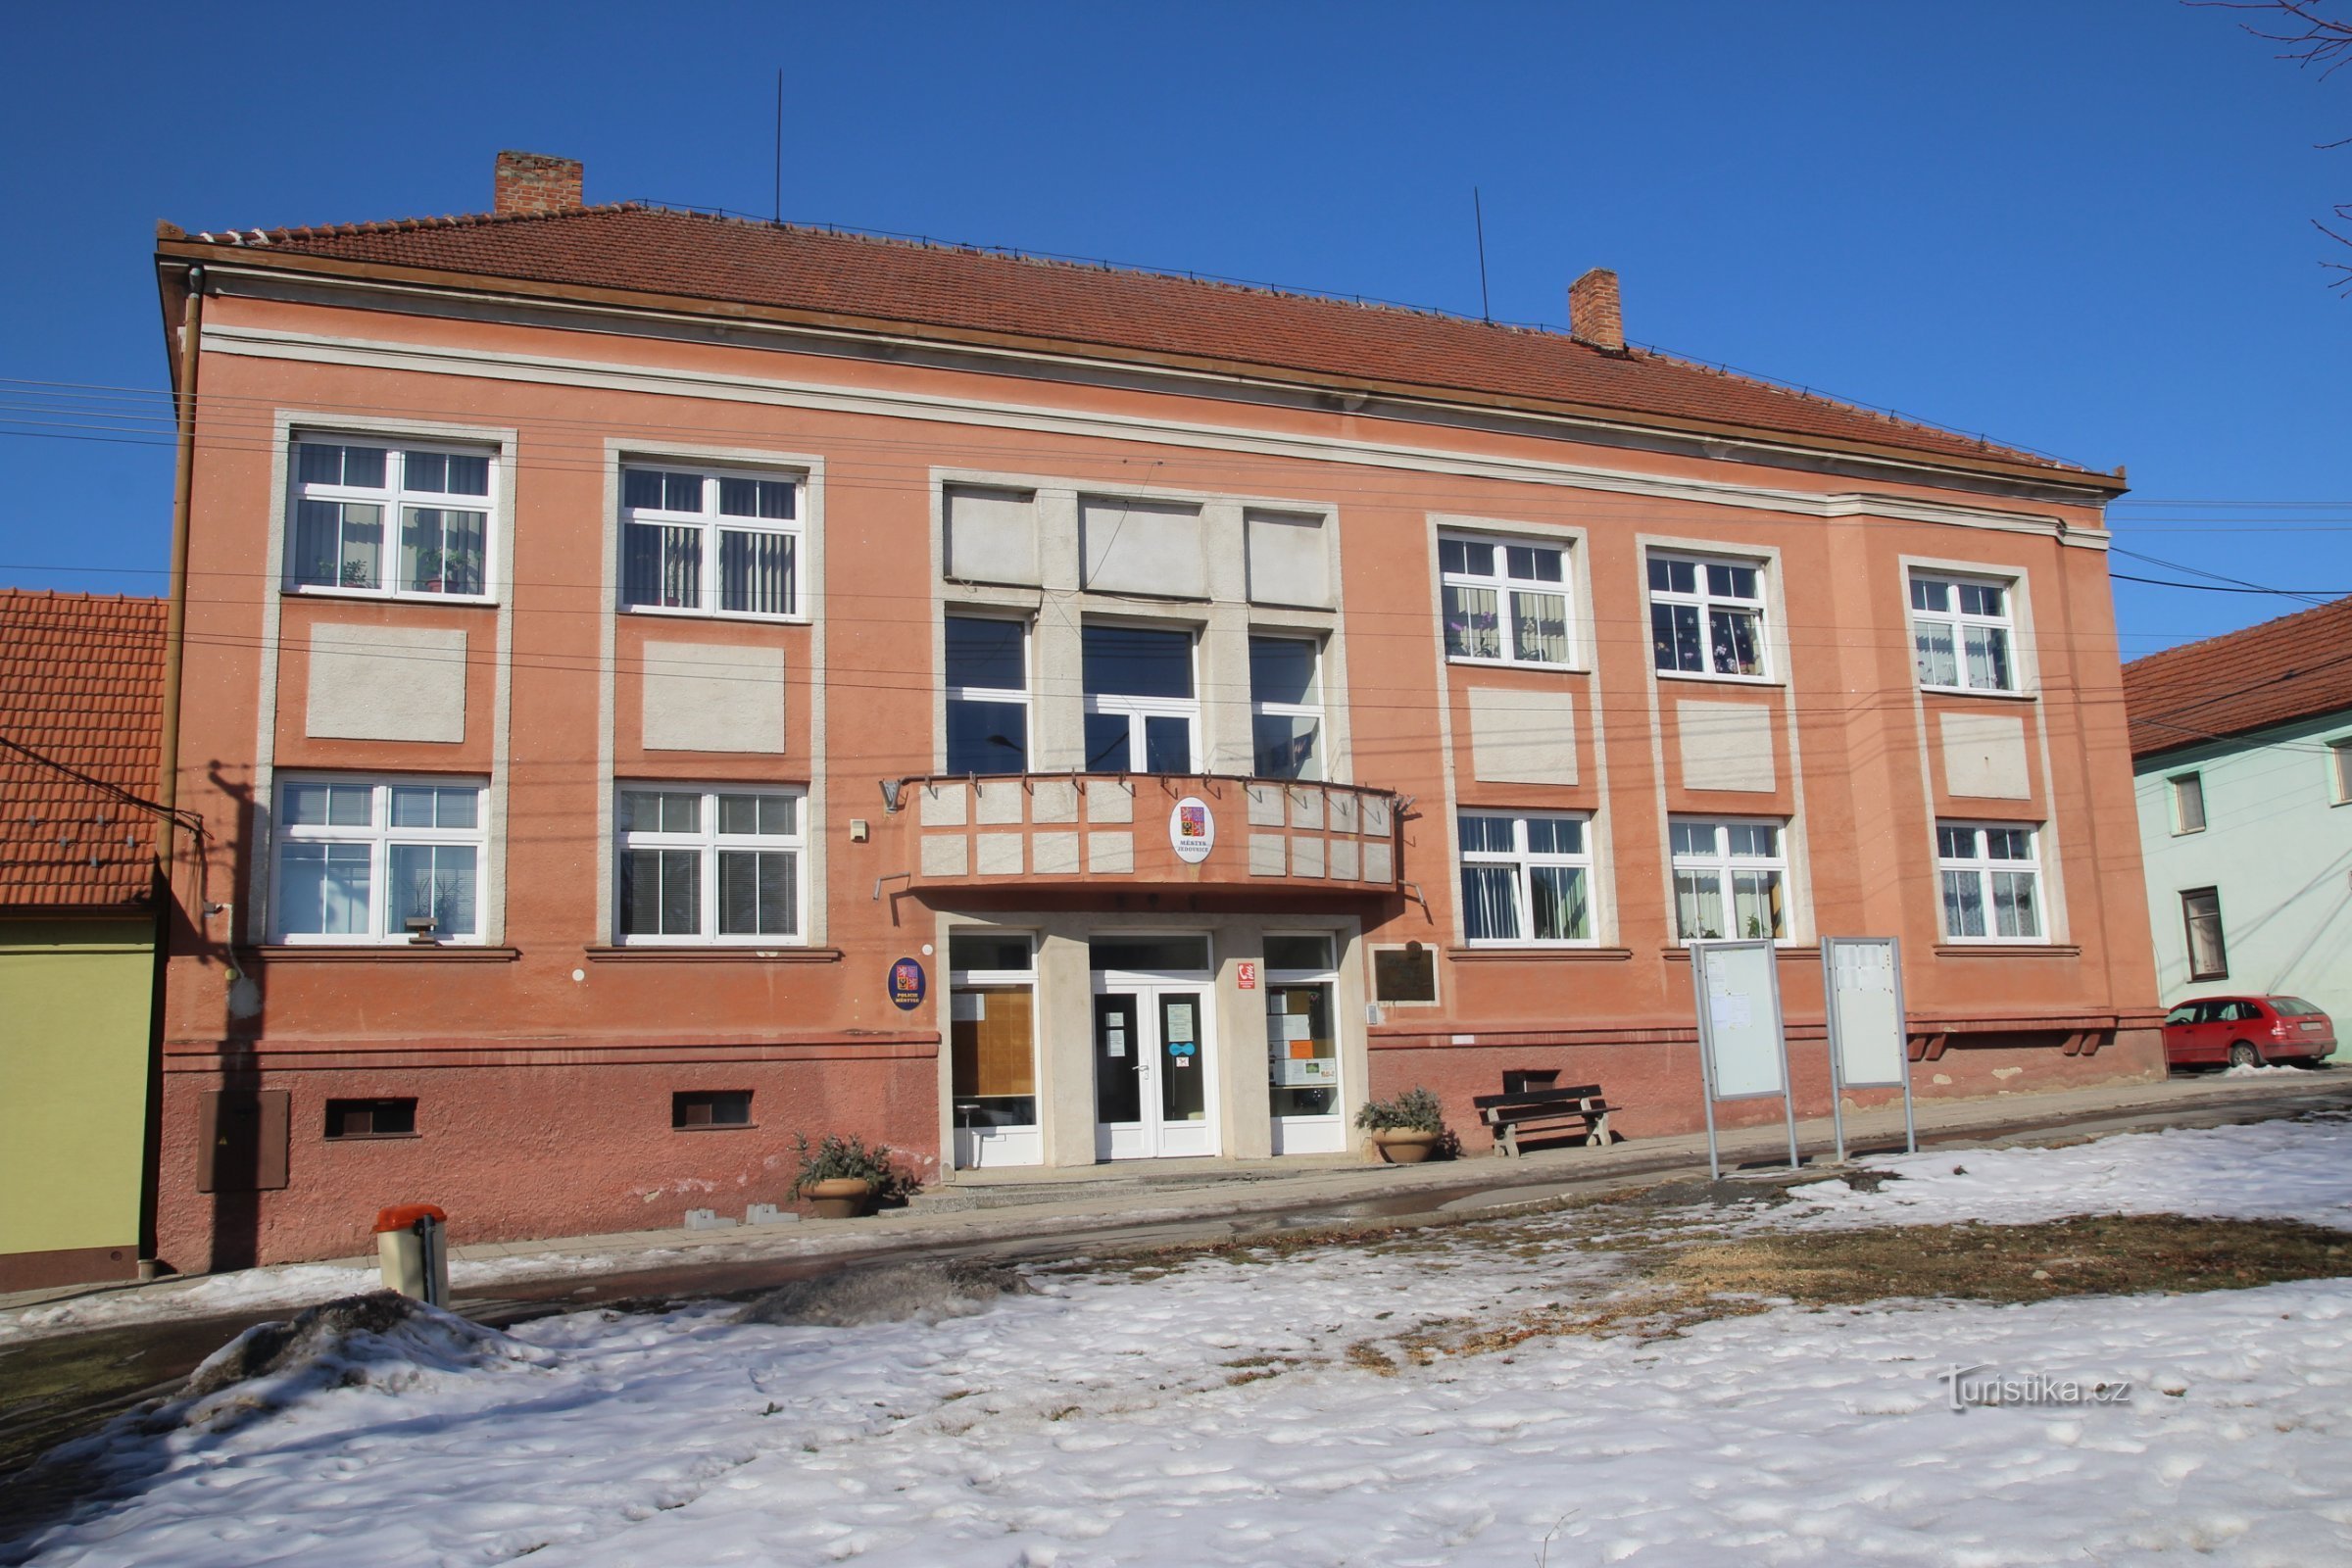 Jedovnice, oficina municipal